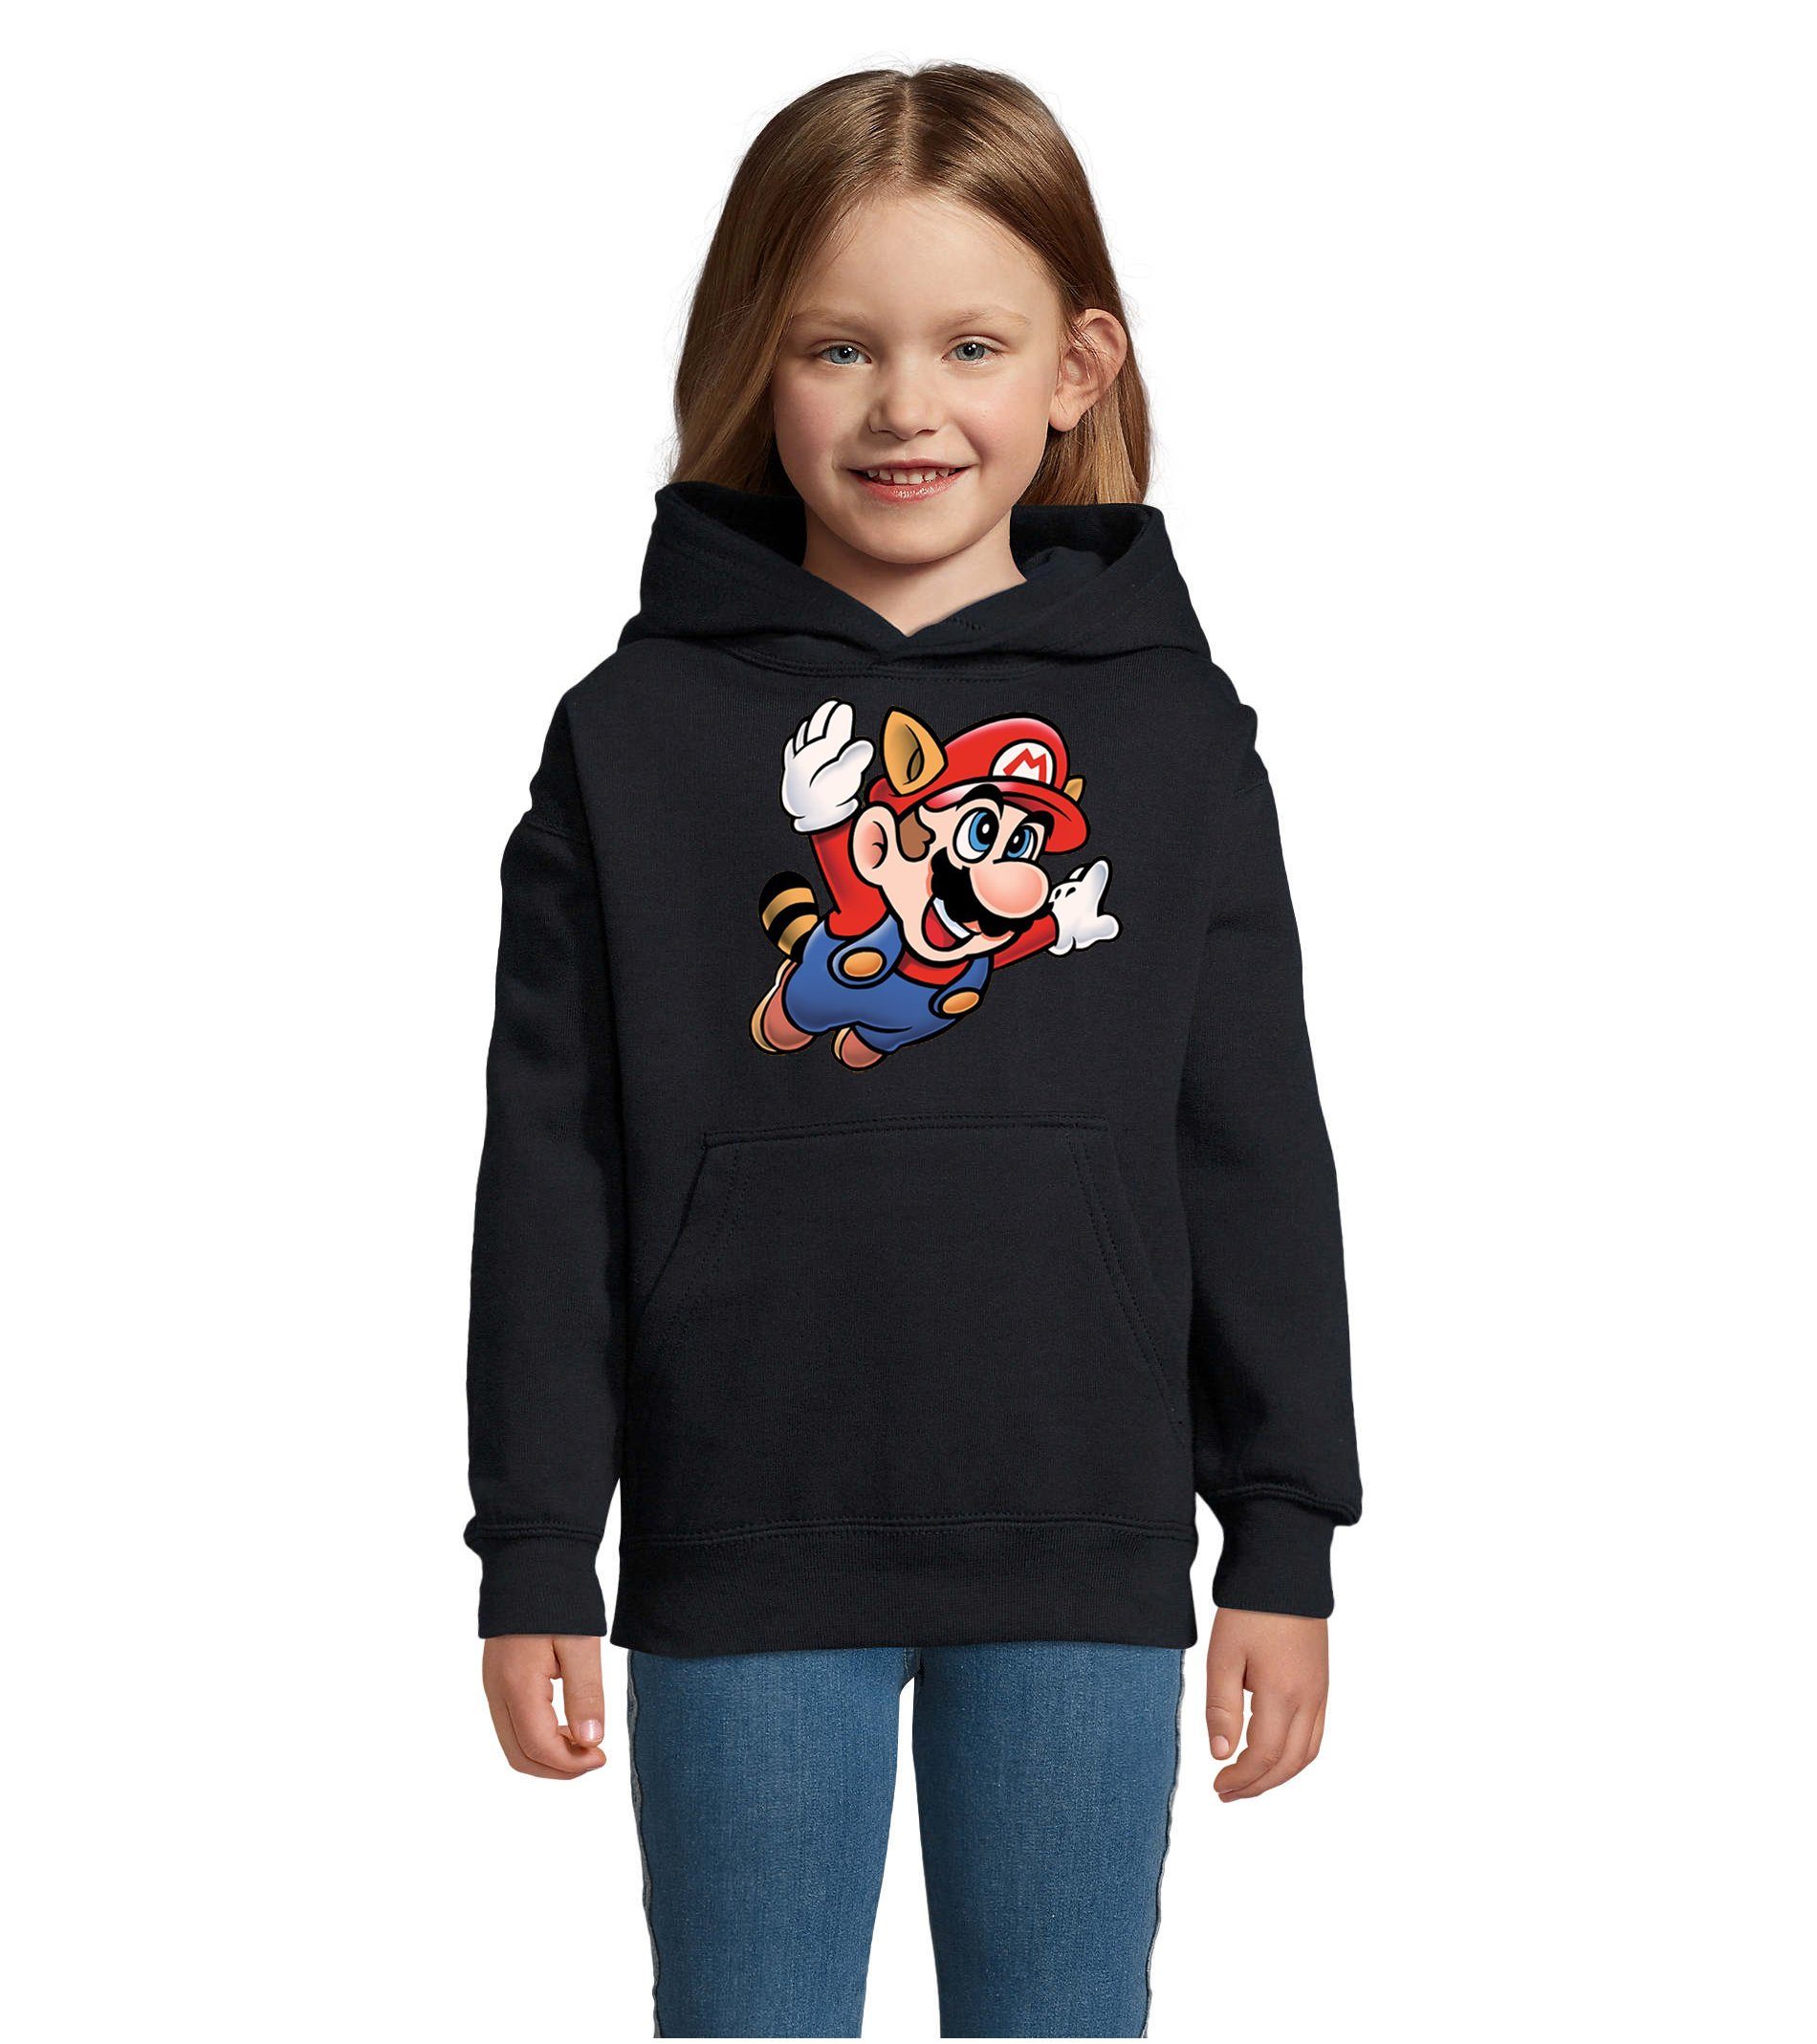 Blondie & Brownie Hoodie Kinder Jungen & Mädchen Super Mario 3 Fligh Nintendo mit Kapuze Navyblau